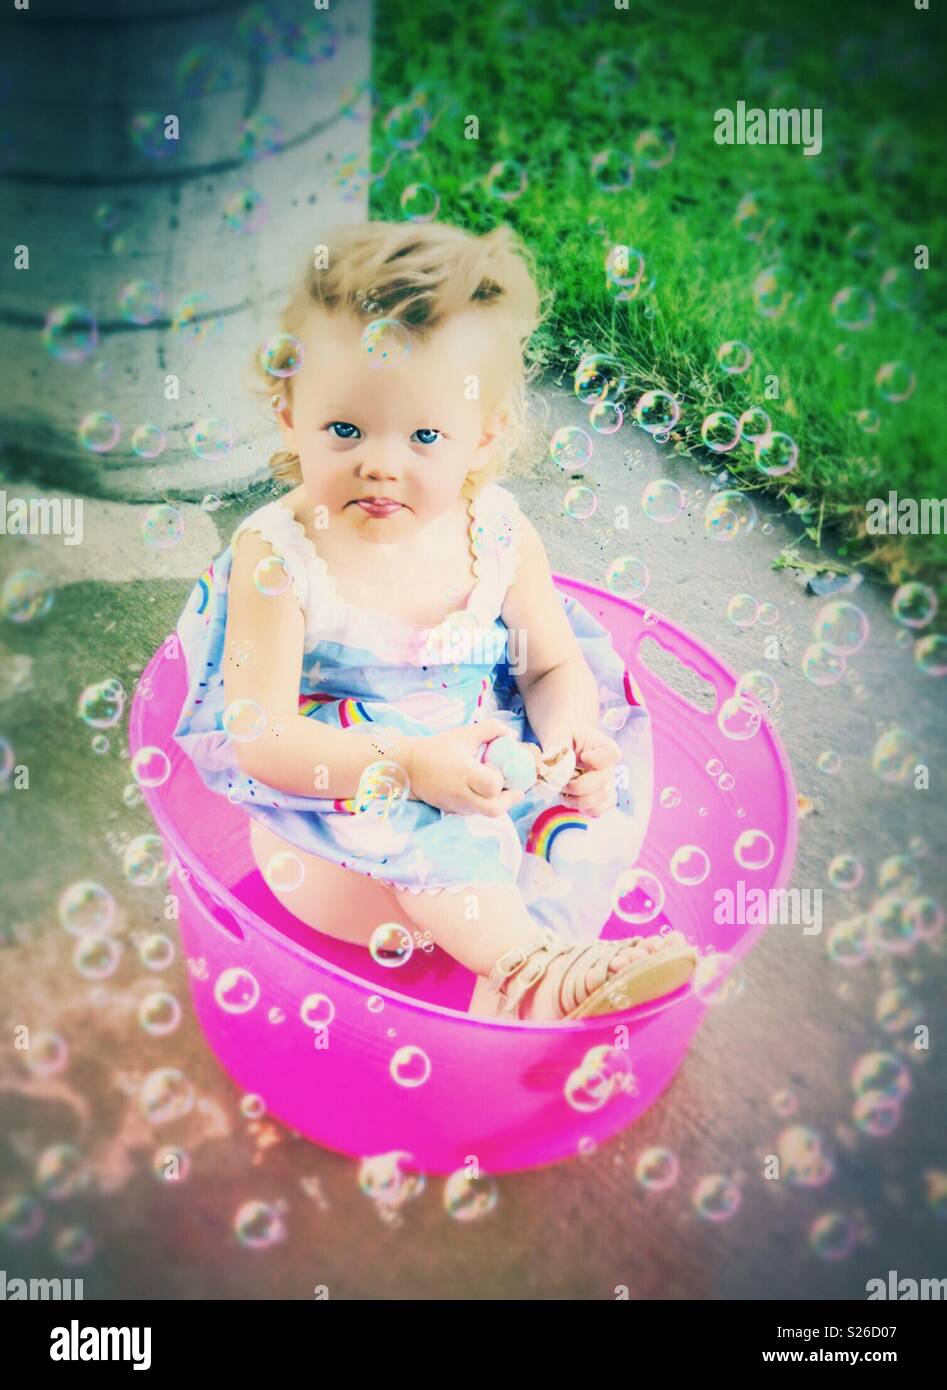 Bebé sentado en una cuchara rosa rodeado de burbujas Foto de stock